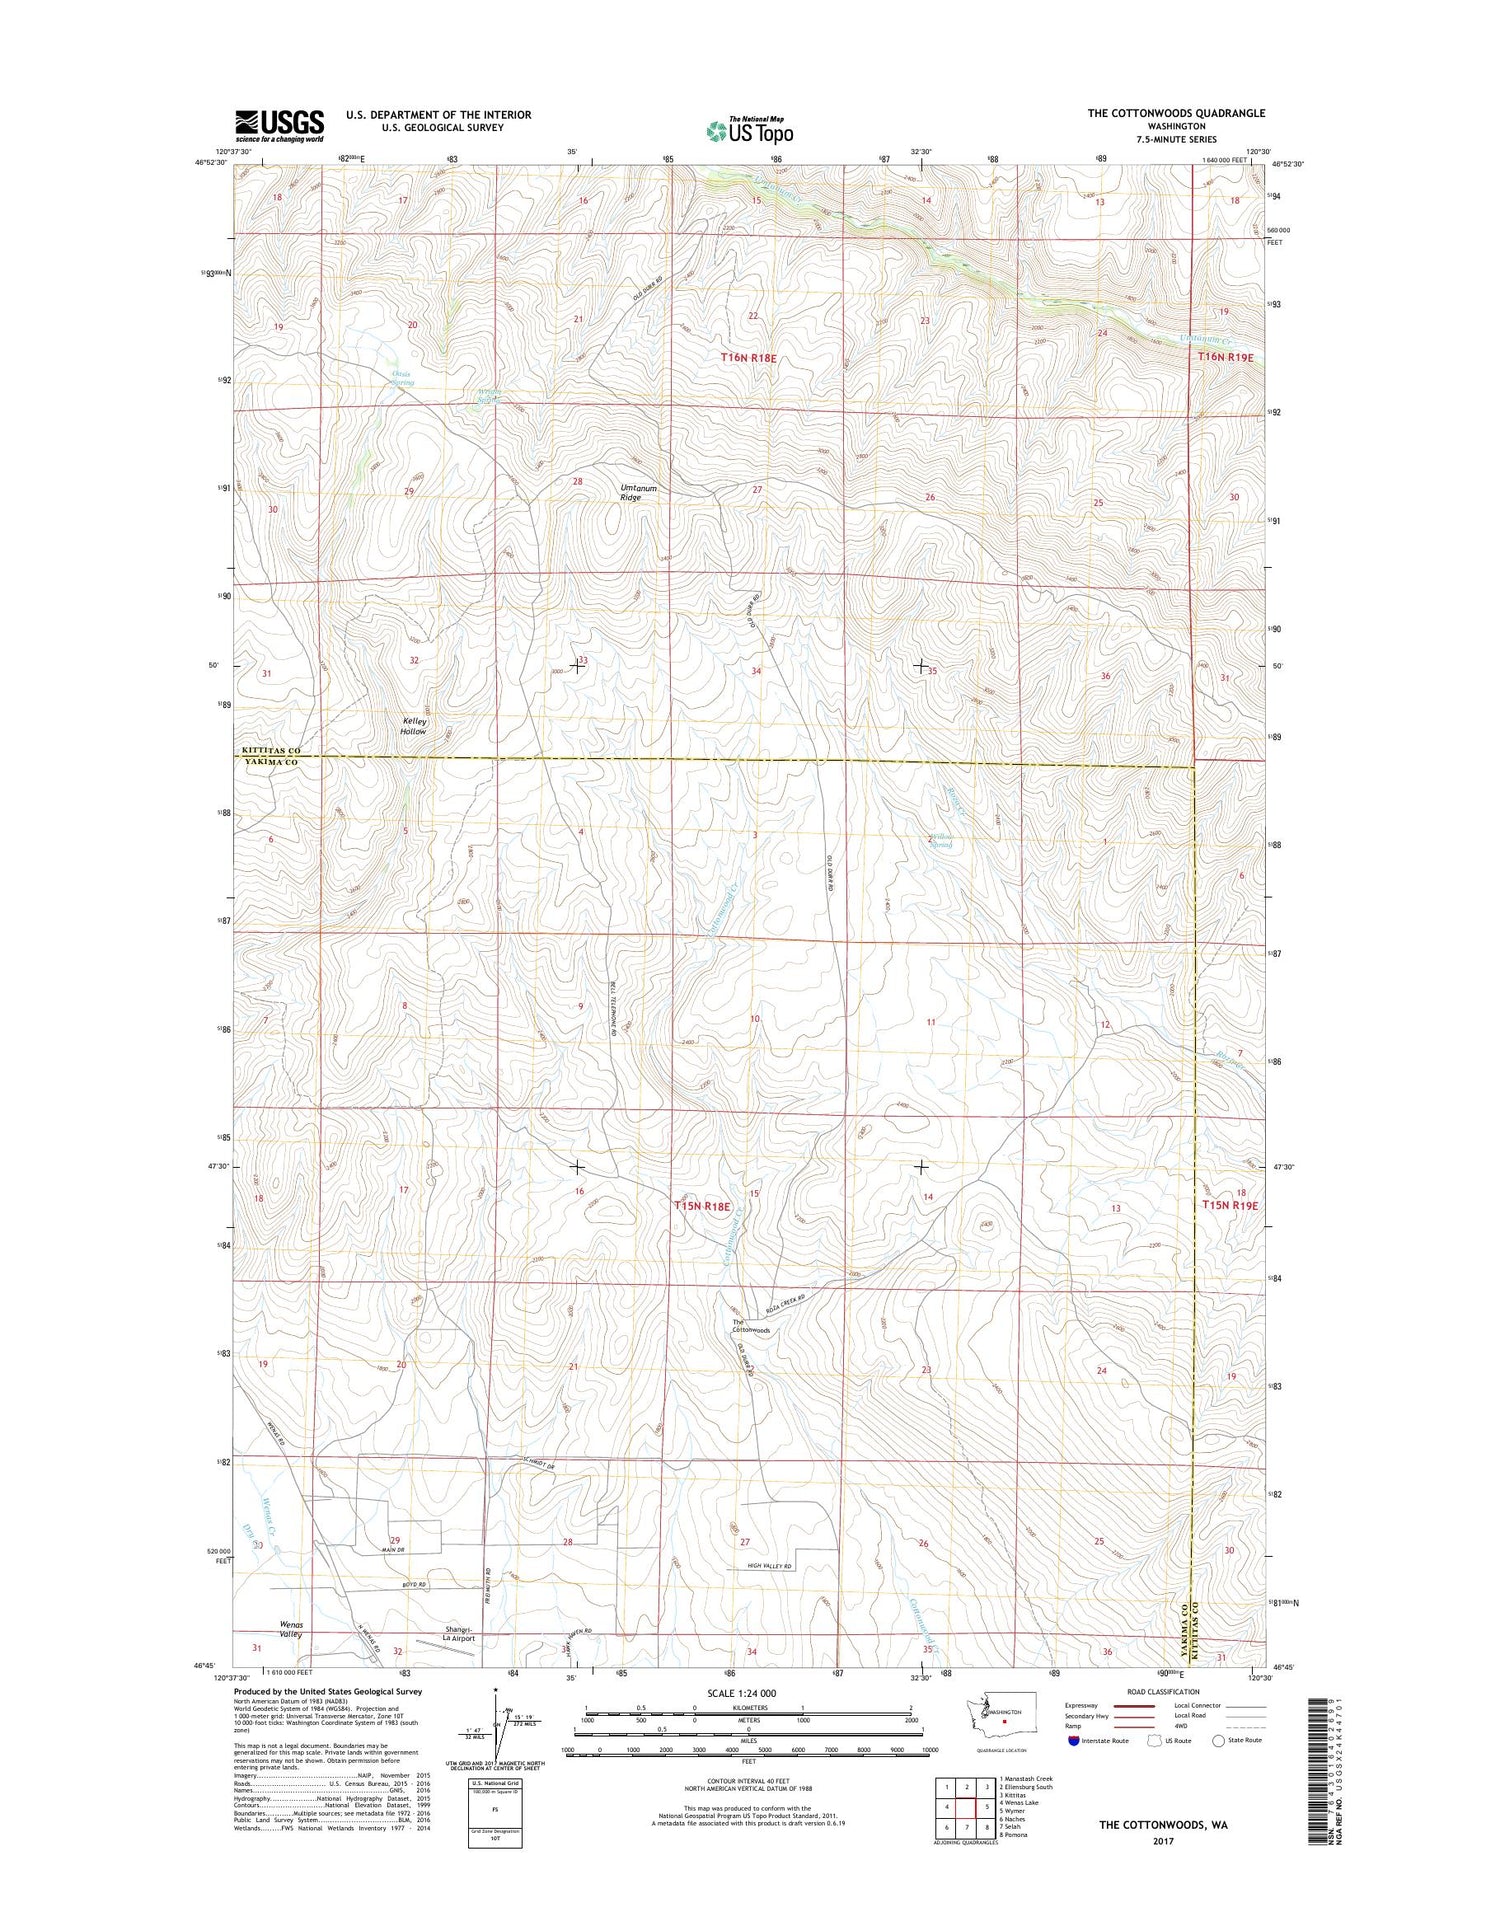 The Cottonwoods Washington US Topo Map Image